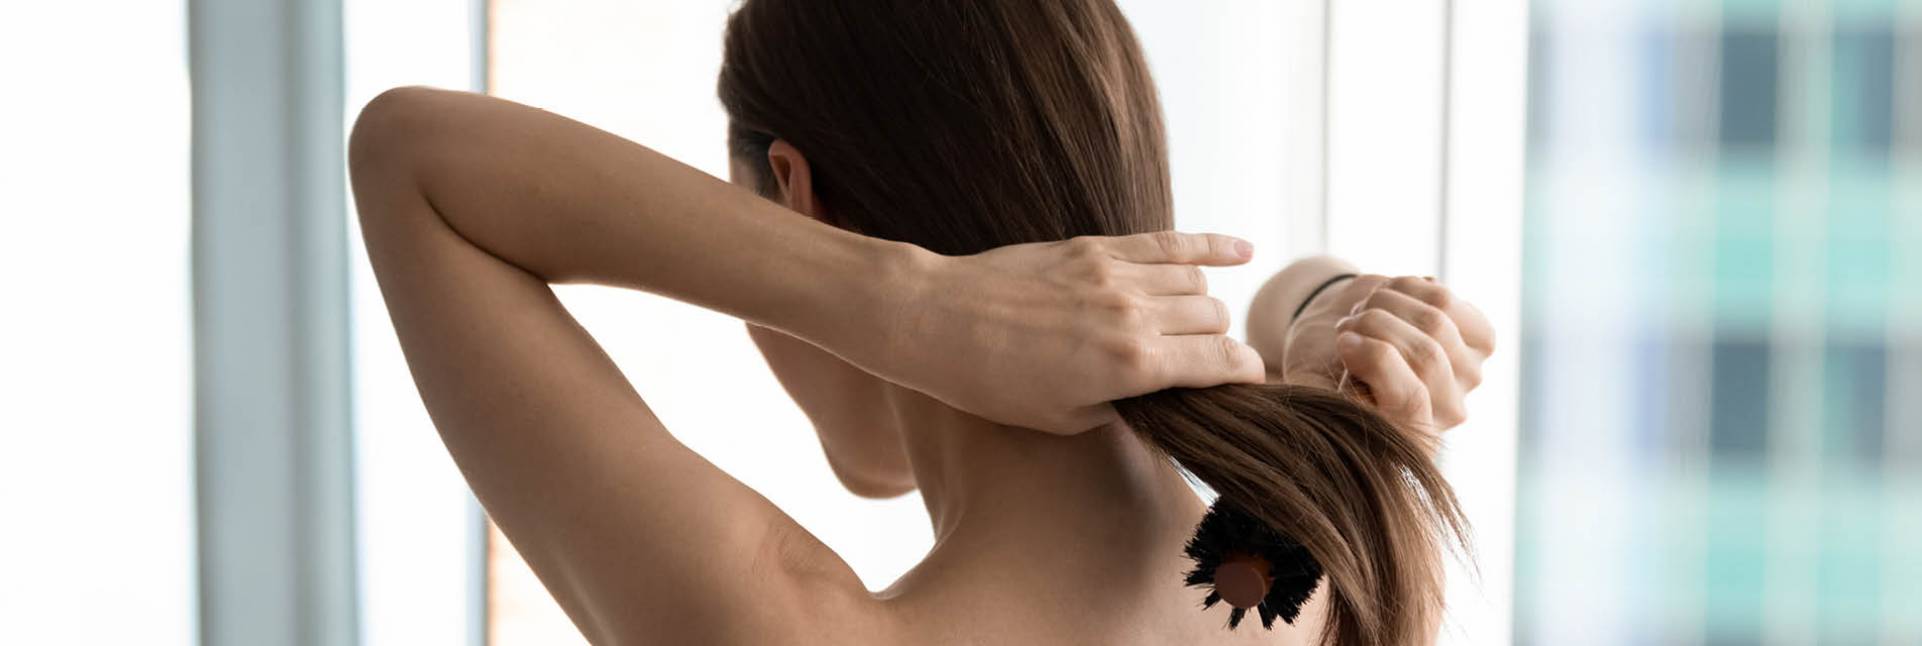 Caída del cabello por estrés: por qué sucede y cómo tratarla